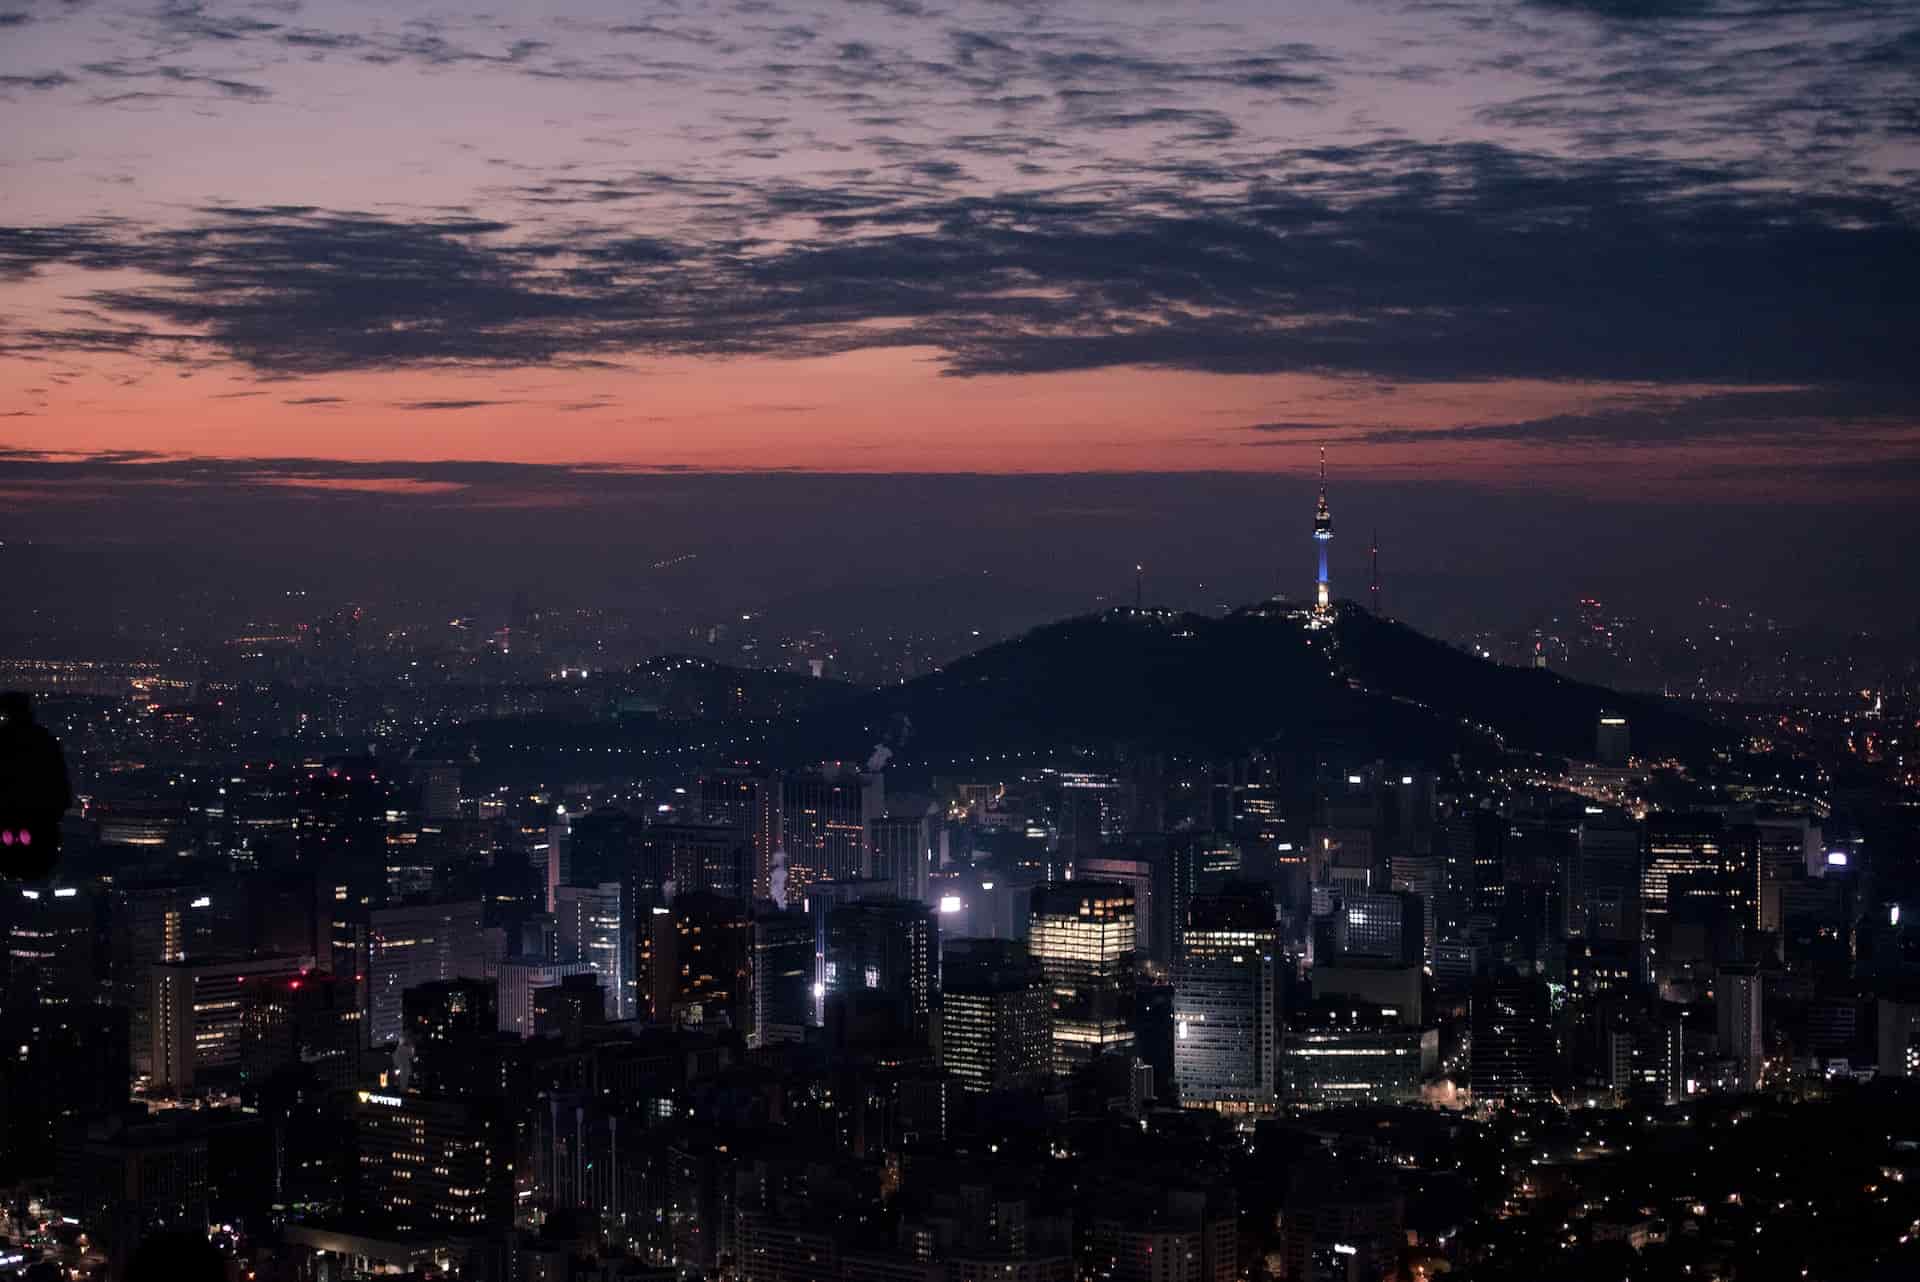 Seoul, South Korea: The Rise of Contemporary Design